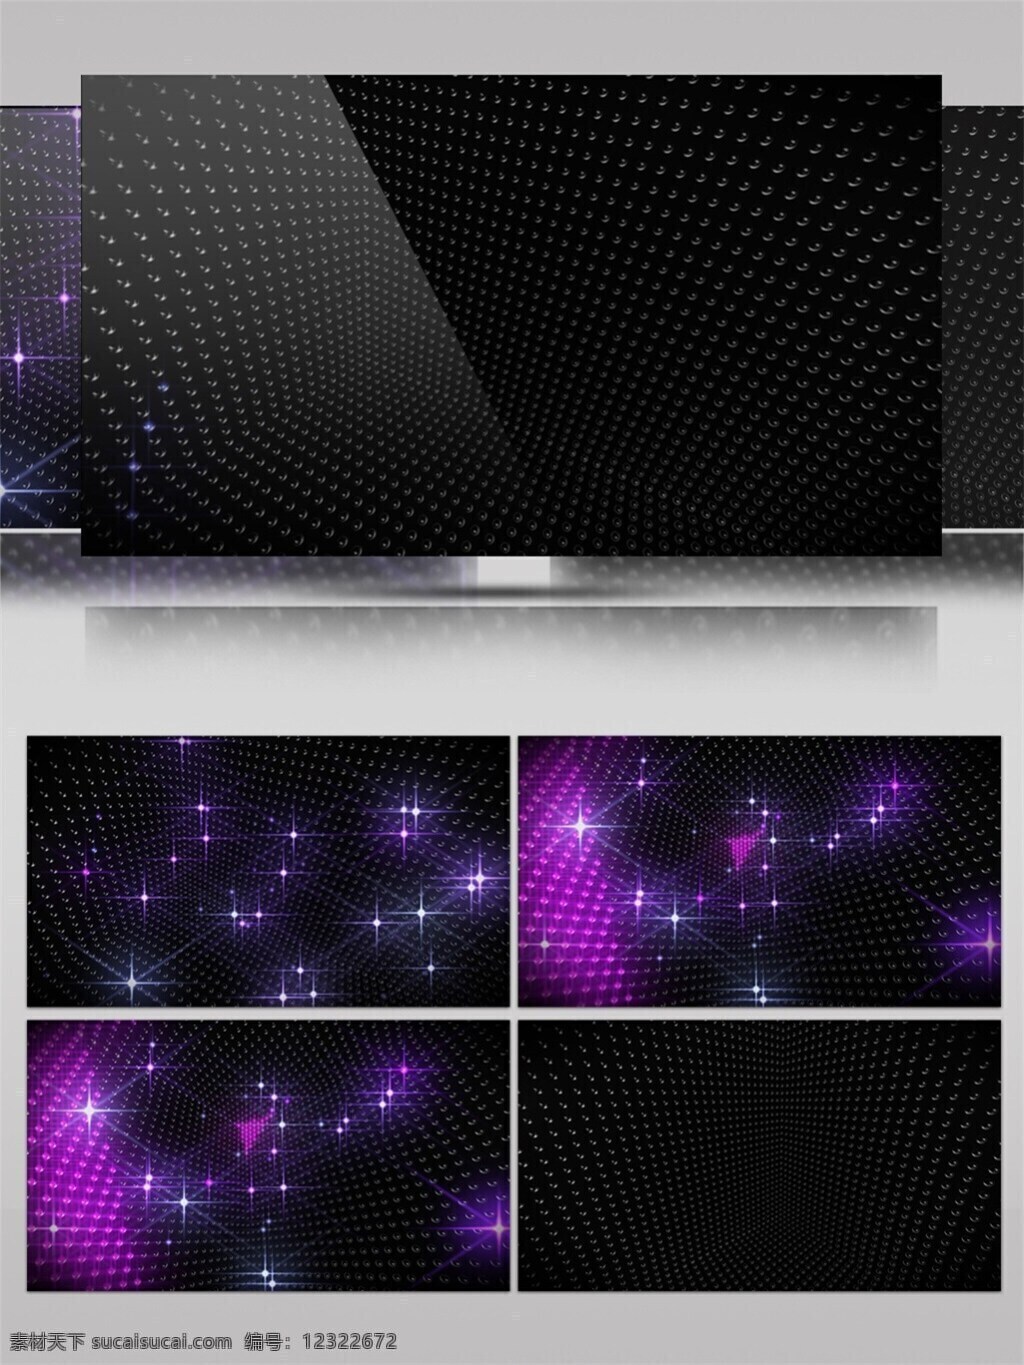 紫色 粒子 高清 视频 3d视频素材 电脑屏幕保护 高清视频素材 光斑散射 粒子光效 视觉享受 手机壁纸 特效视频素材 炫酷星空